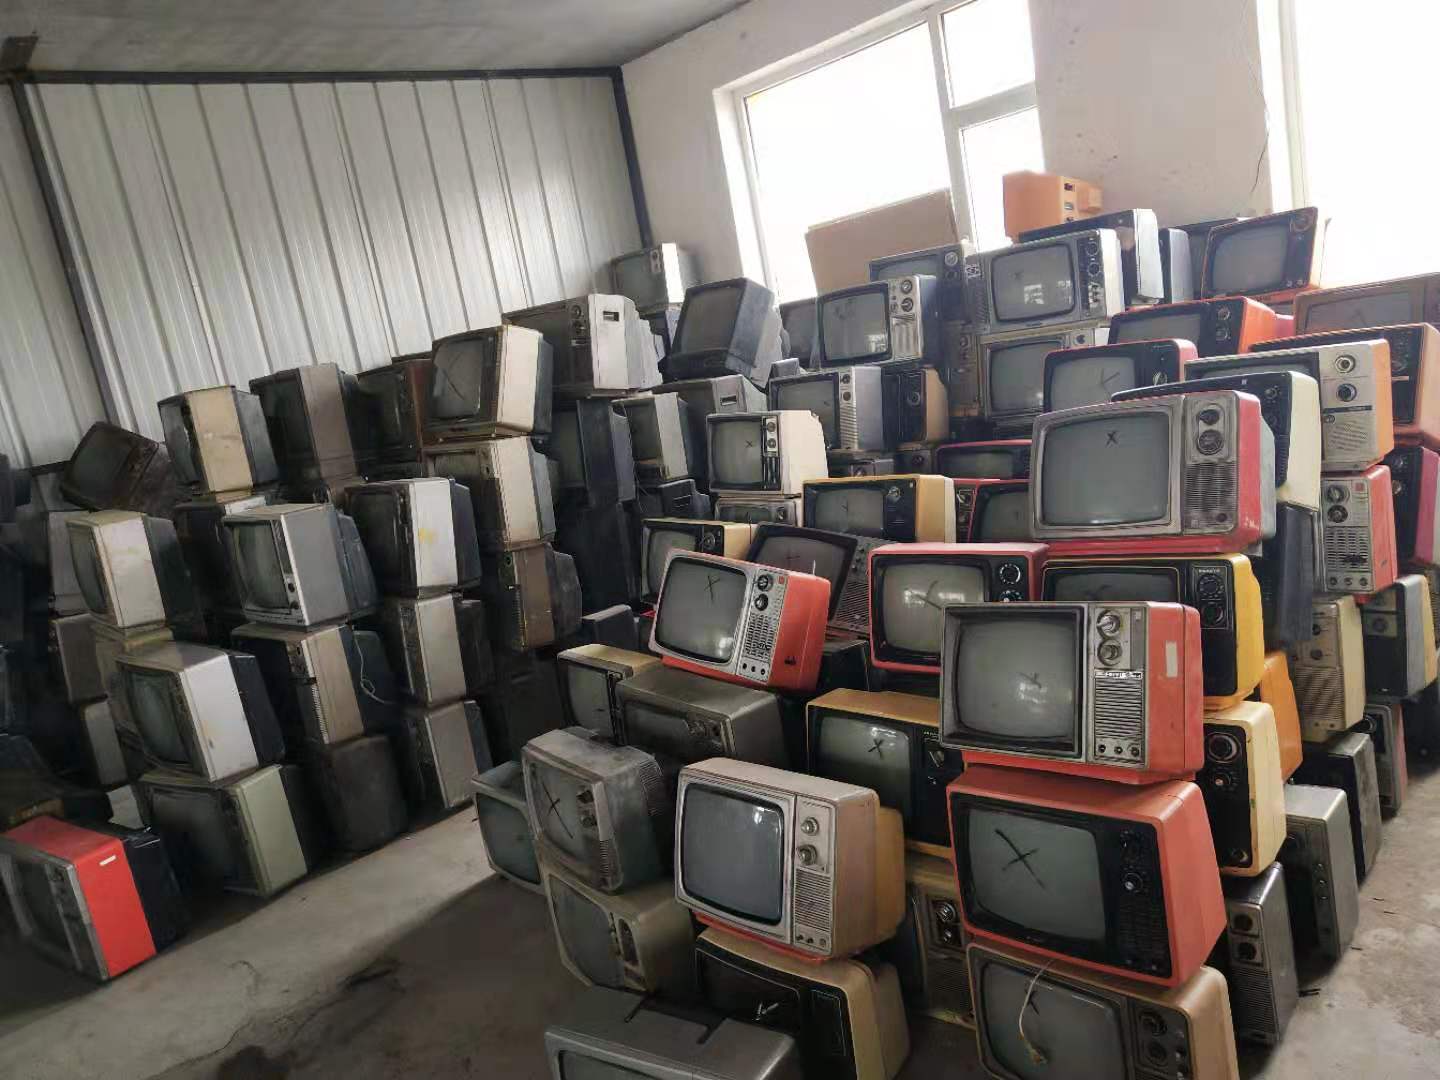 70-80年代 复古 老式怀旧12 14 17寸黑白电视机老旧物件橱窗装饰